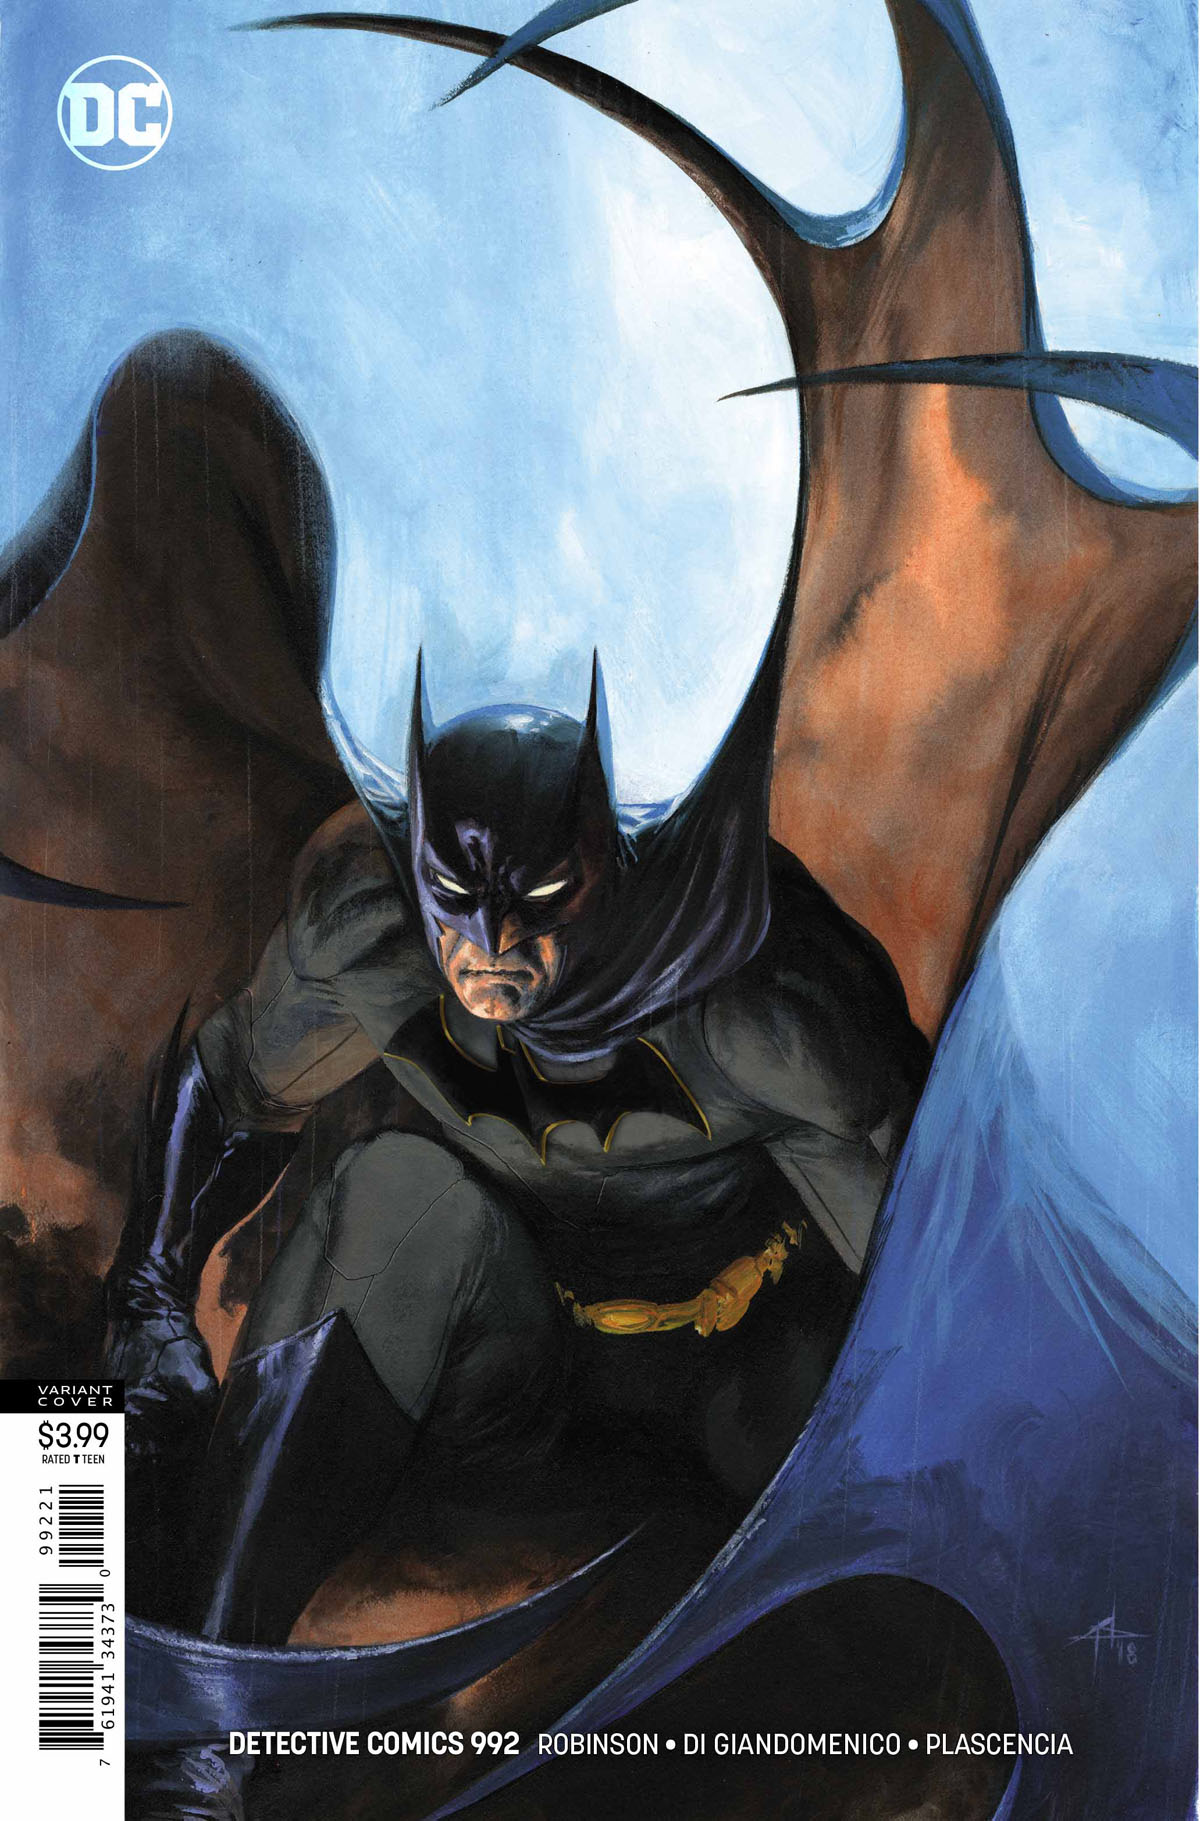 Detective Comics #992 variant cover